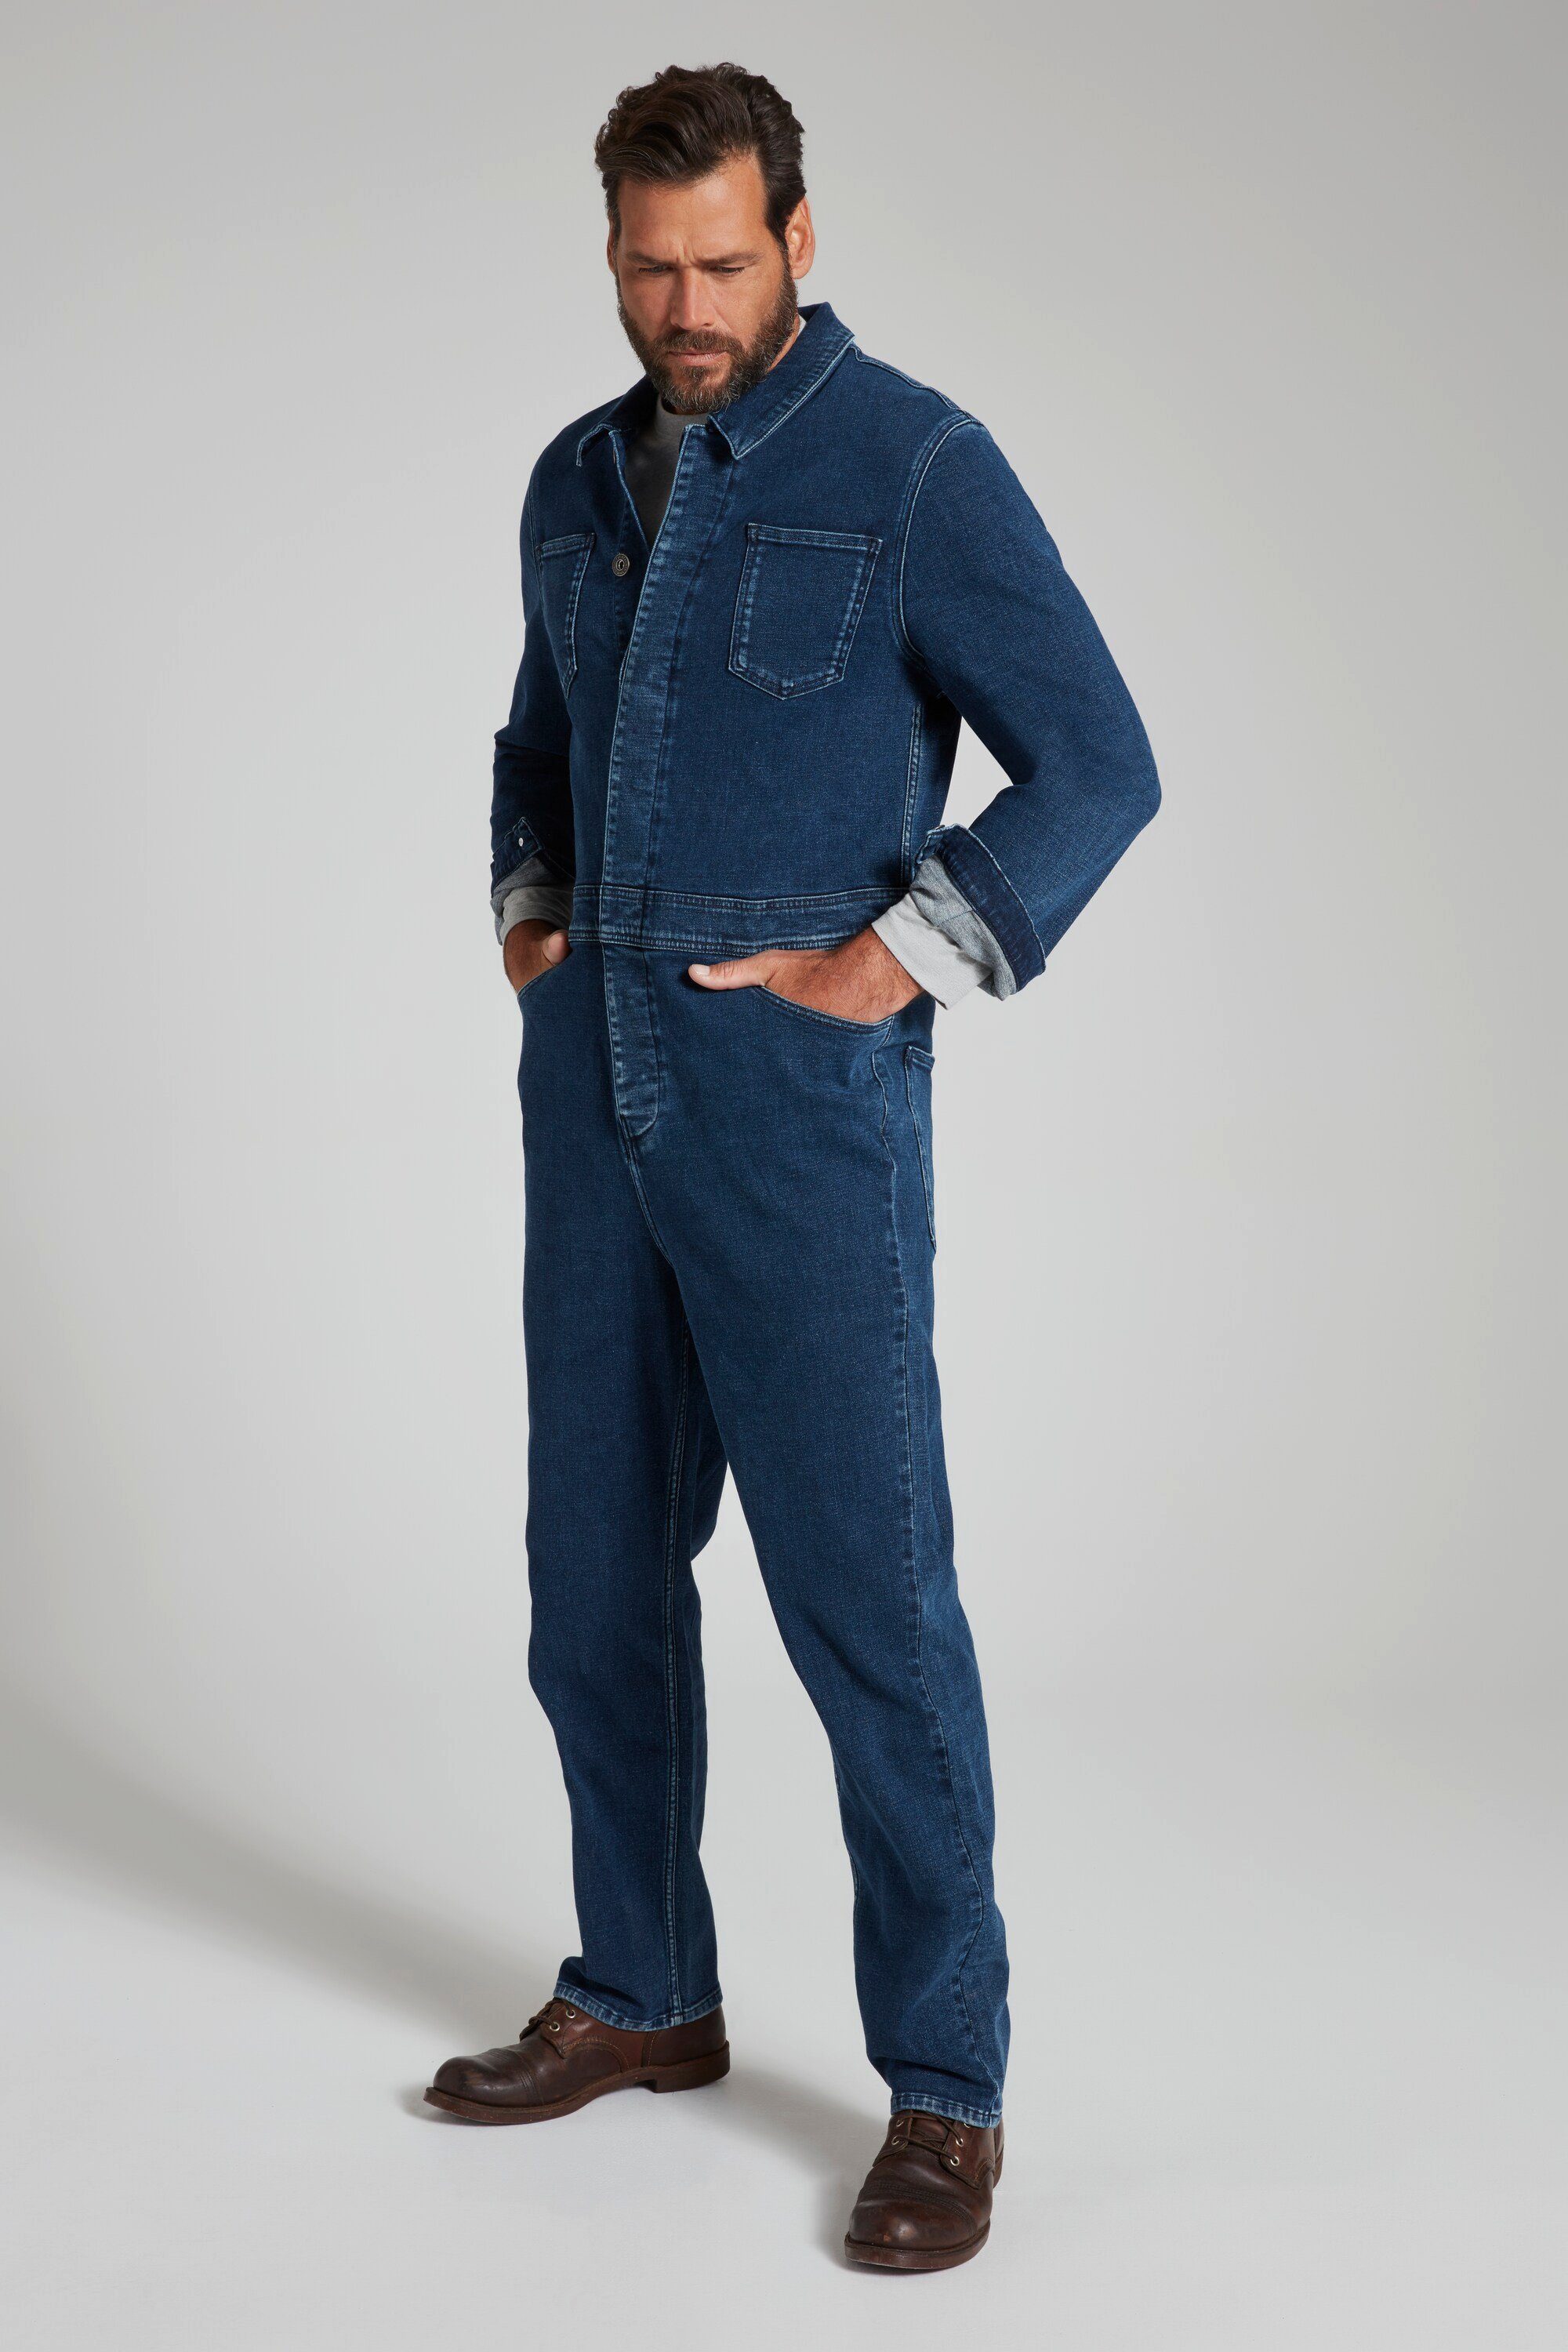 blue Workwear 5-Pocket-Jeans denim Denim Brusttaschen JP1880 Overall Langarm